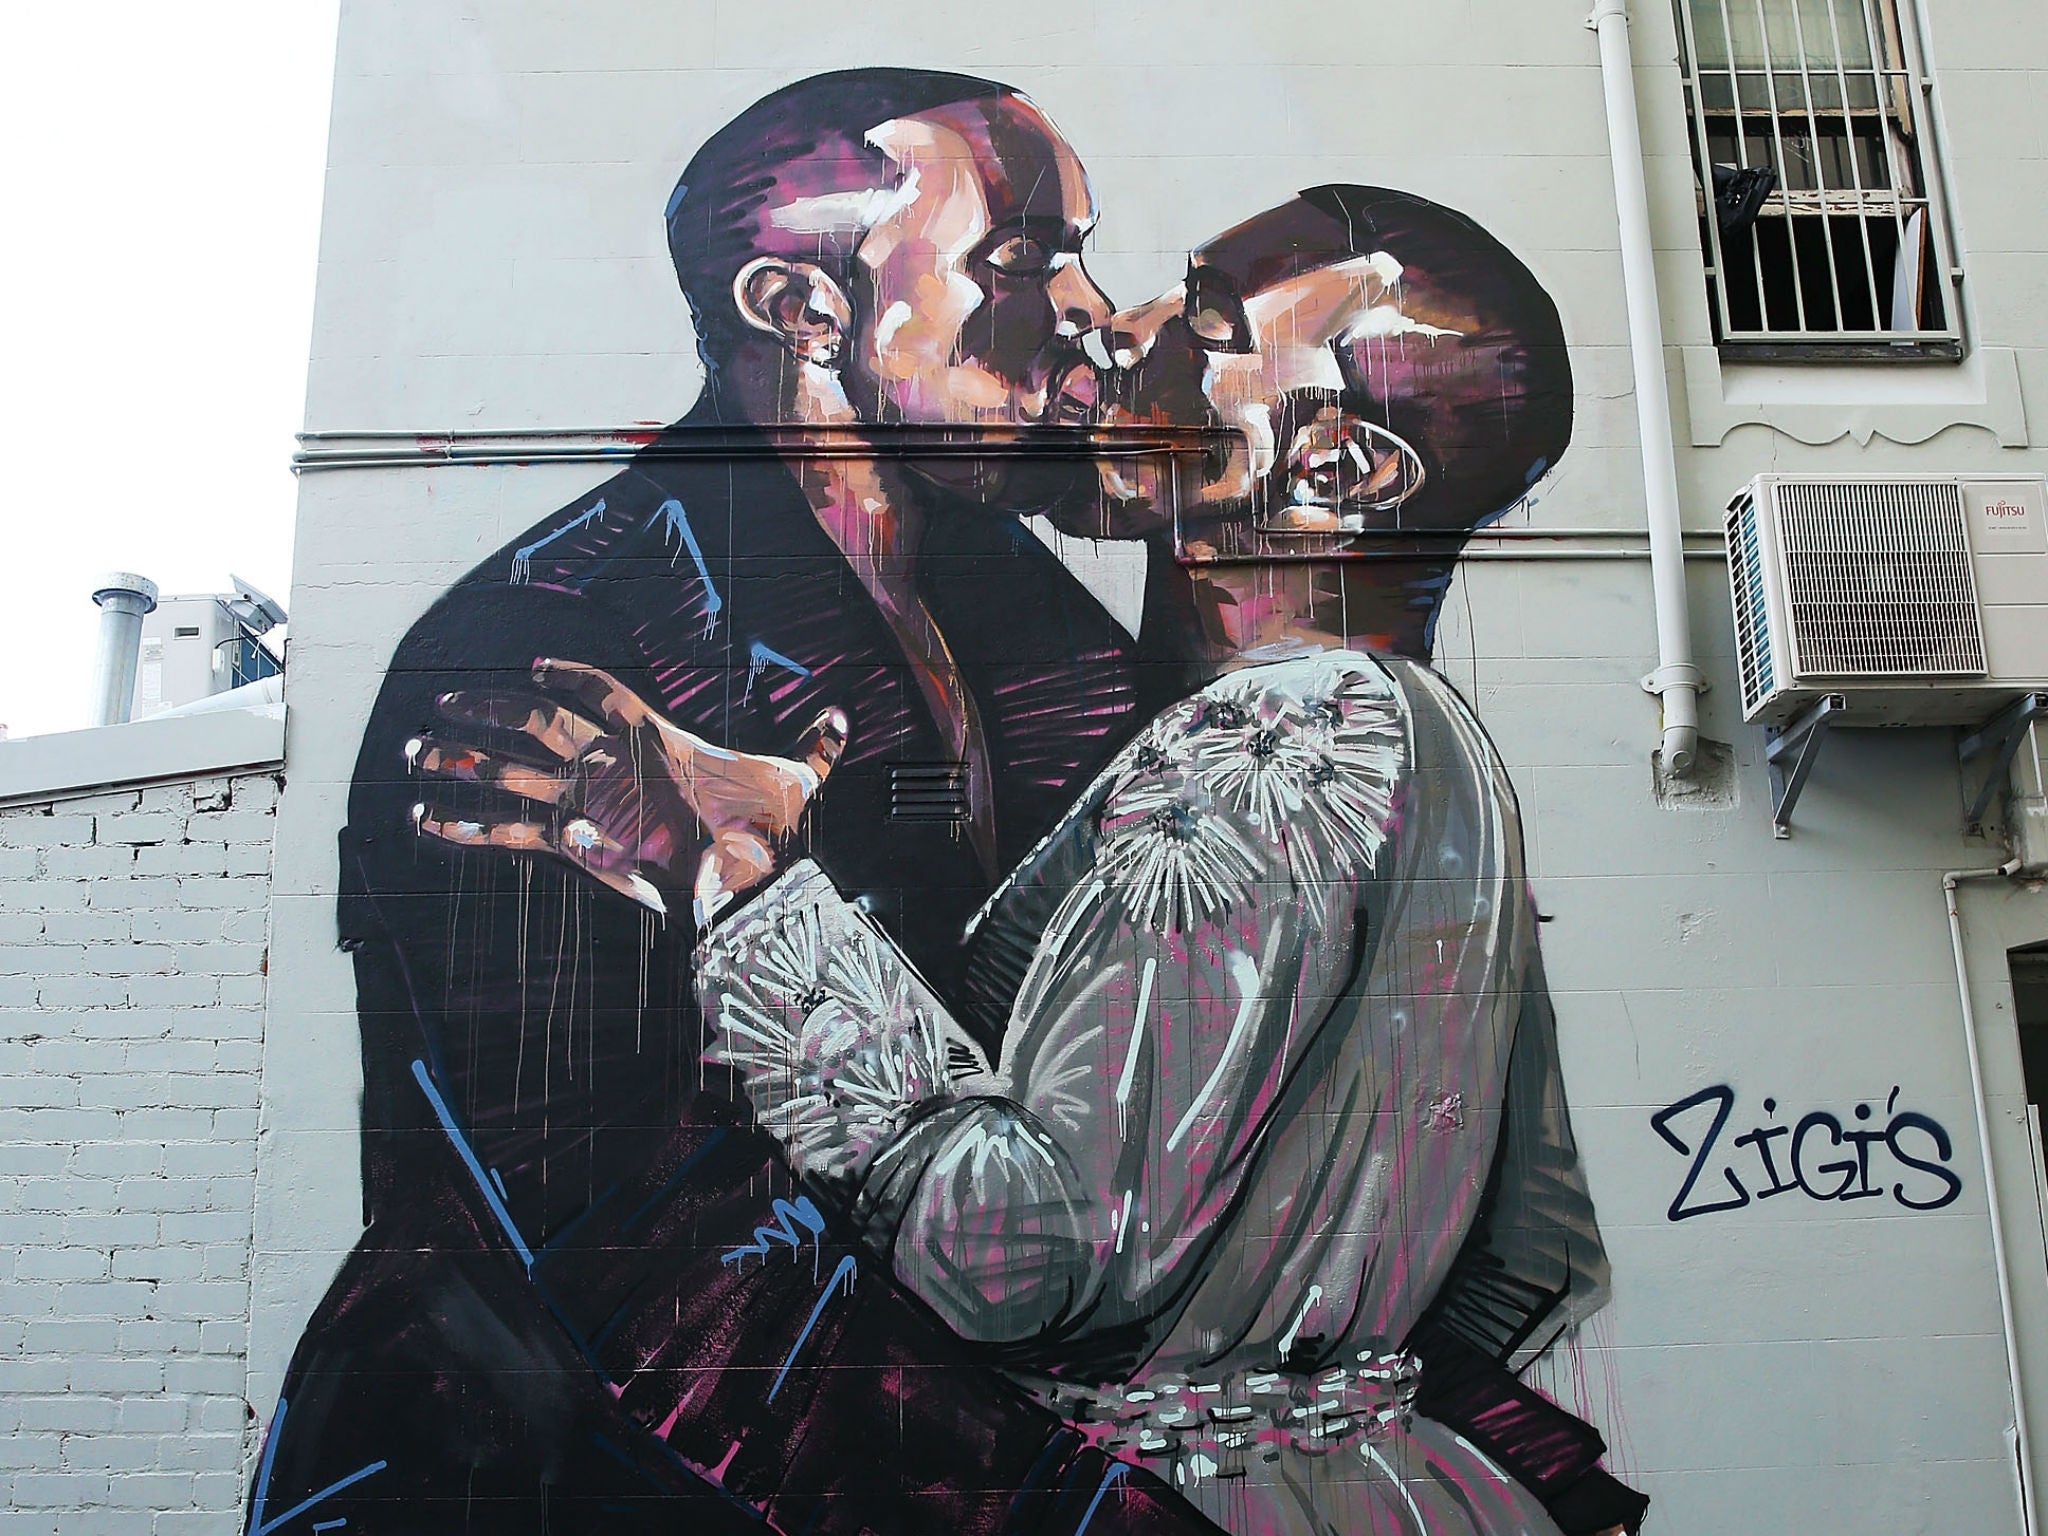 Scott Marsh's 'Kanye Loves Kanye' mural in Sydney before he painted over it